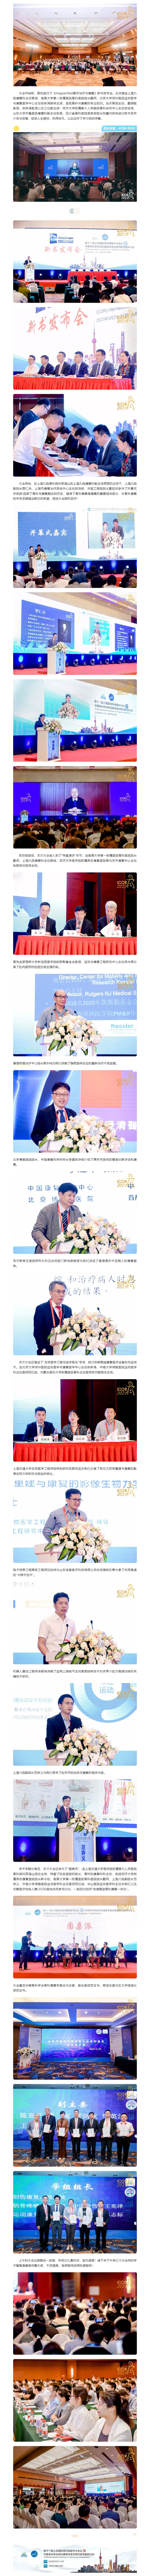 第十一届上海国际骨科康复学术会议首日精彩瞬间-02